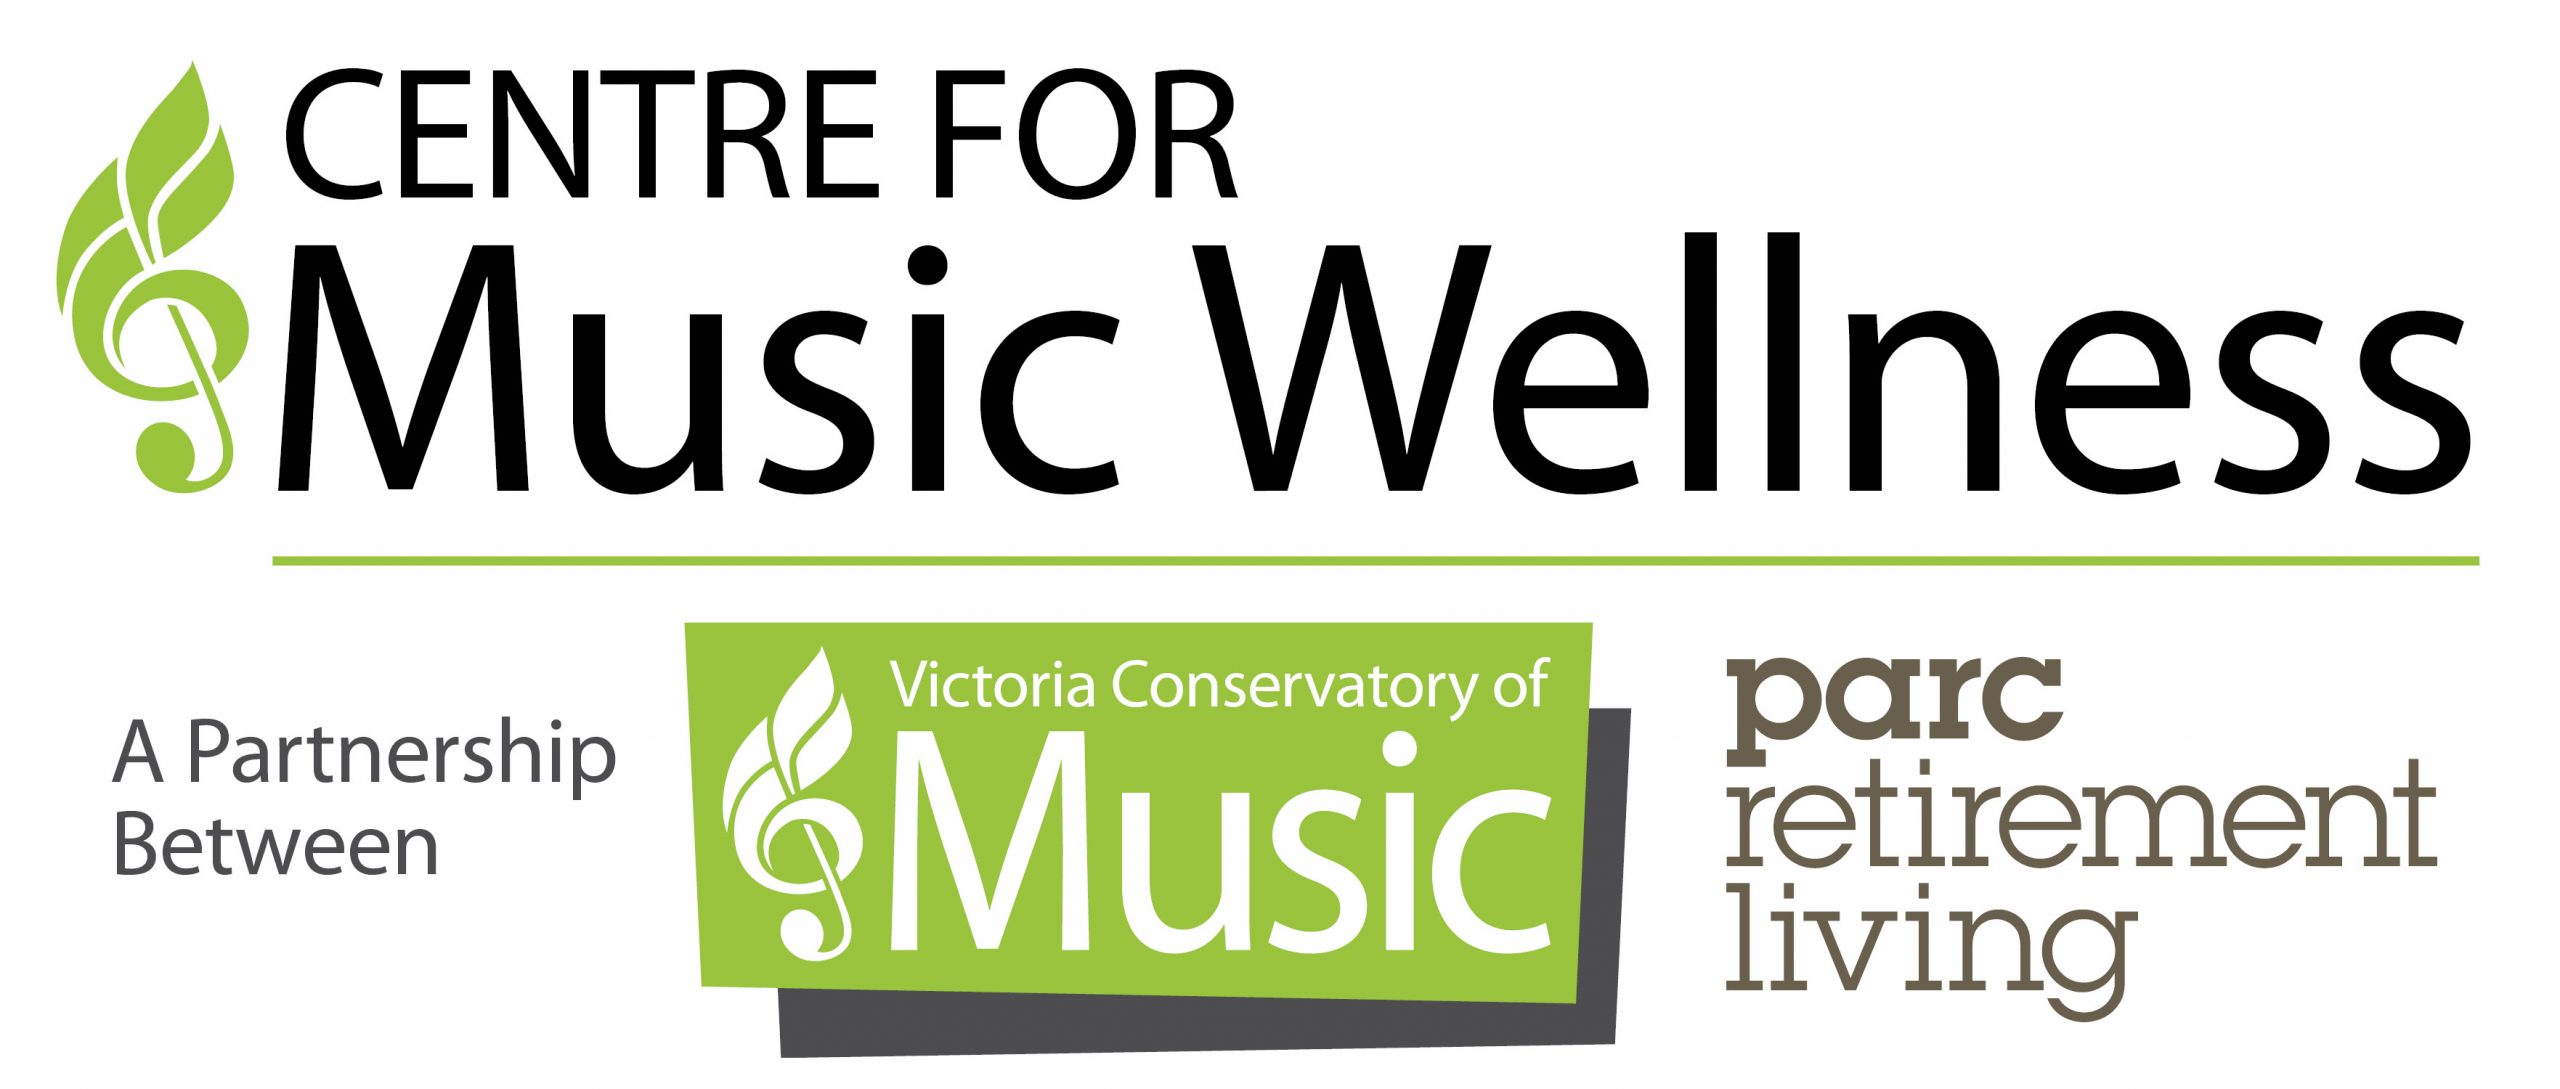 PARC Music Wellness logo